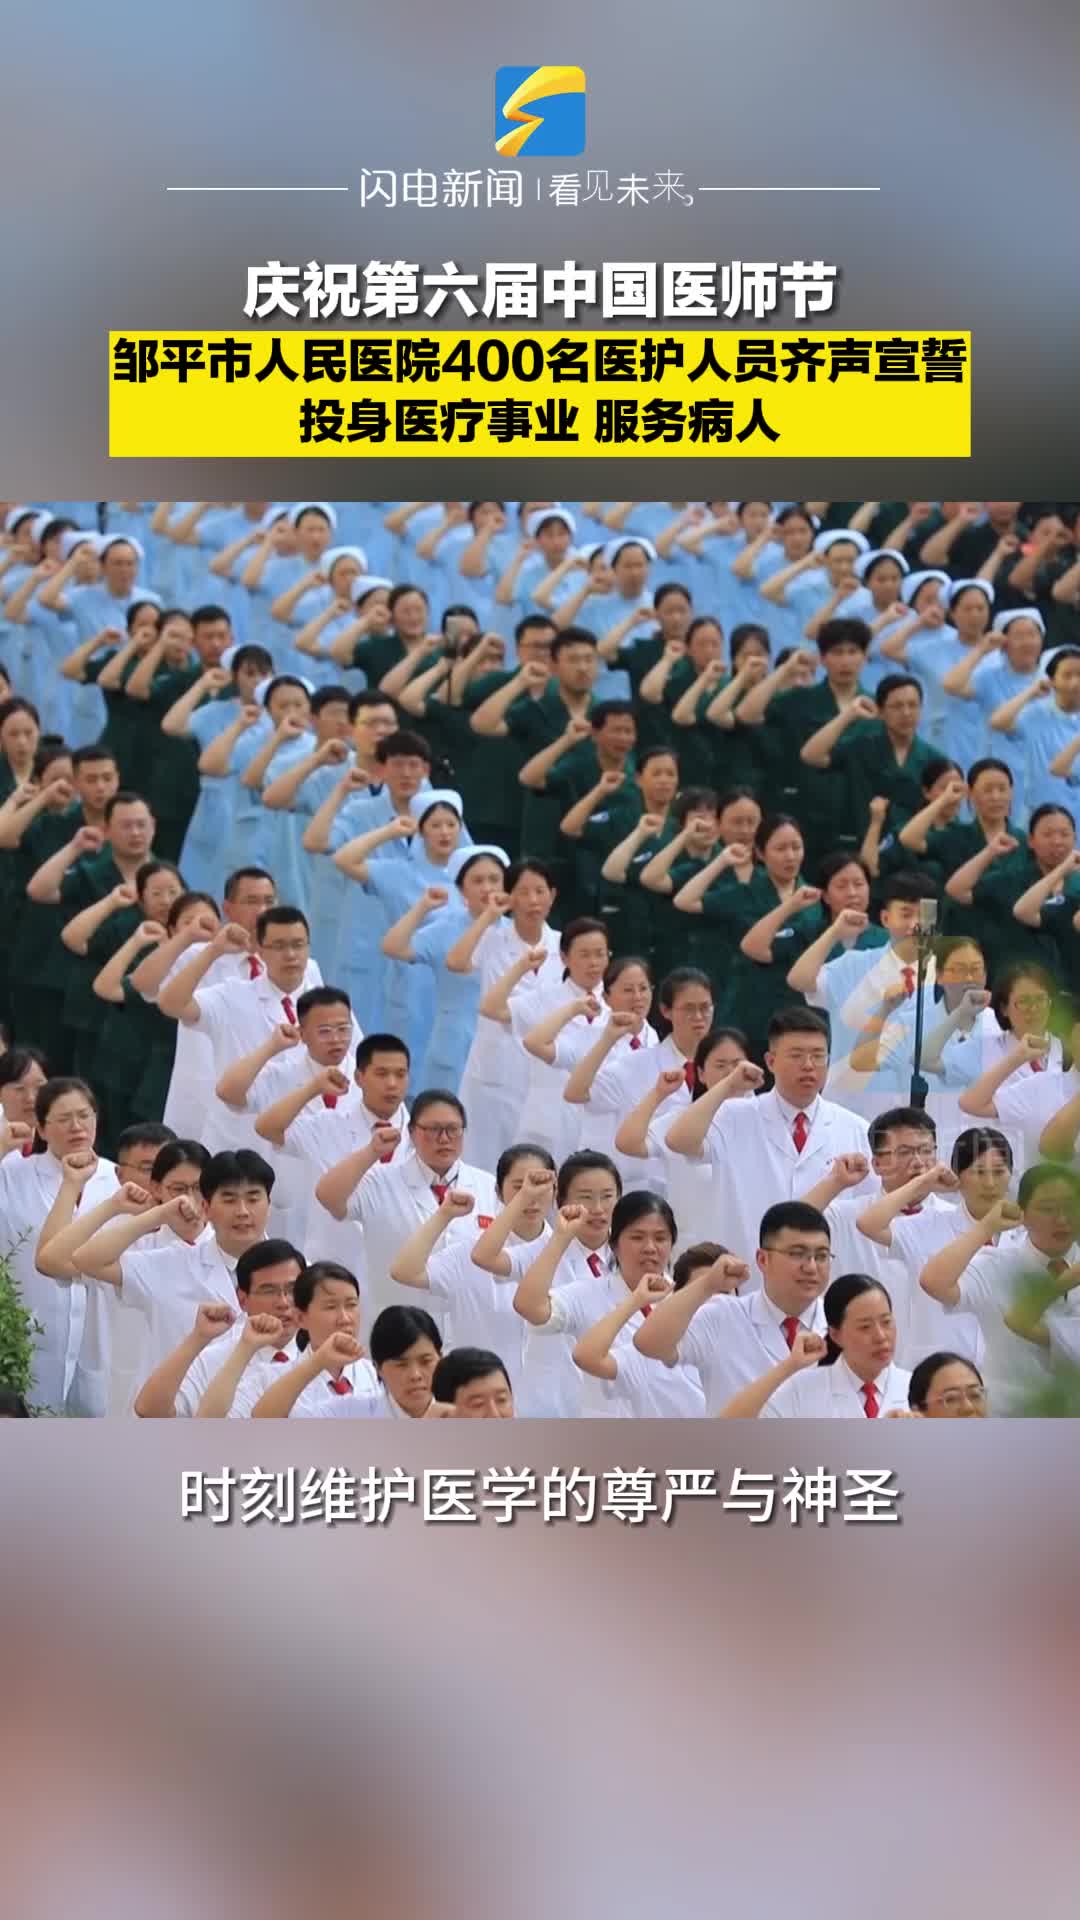 庆祝第六届中国医师节 邹平400余名医护人员齐声宣誓